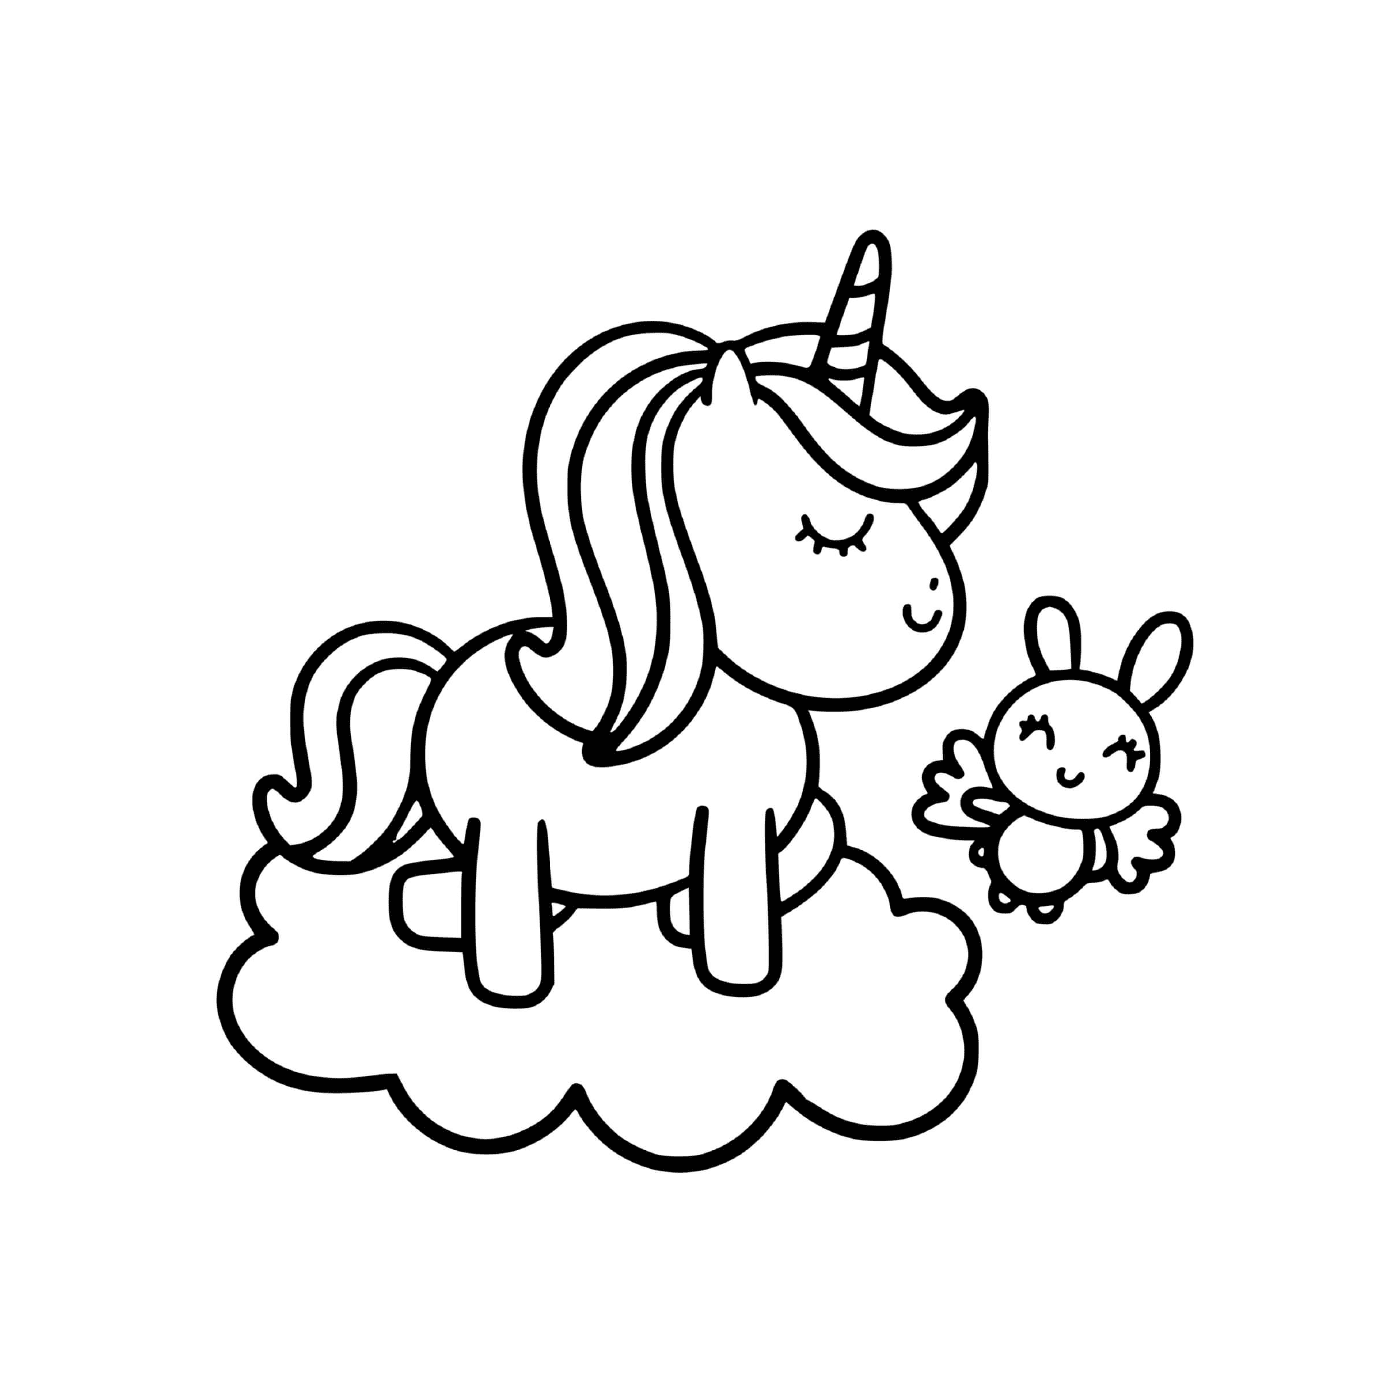  एक बादल पर एक गड़वाई कानावा और उसका बच्चा 